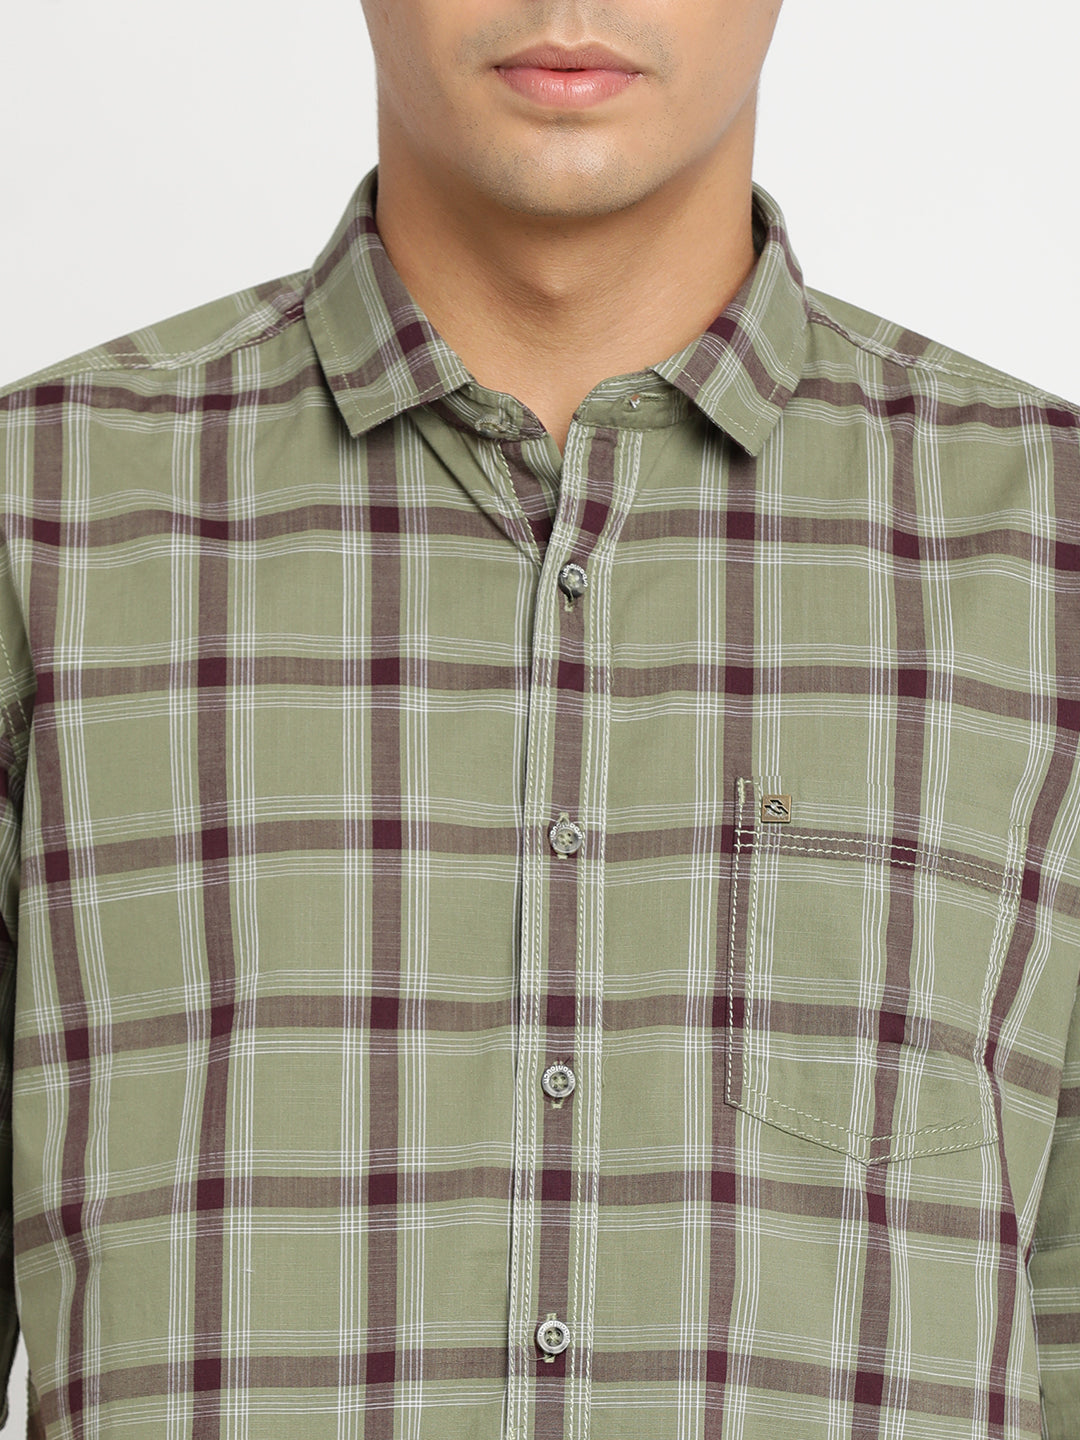 Green Checkerd Shirt